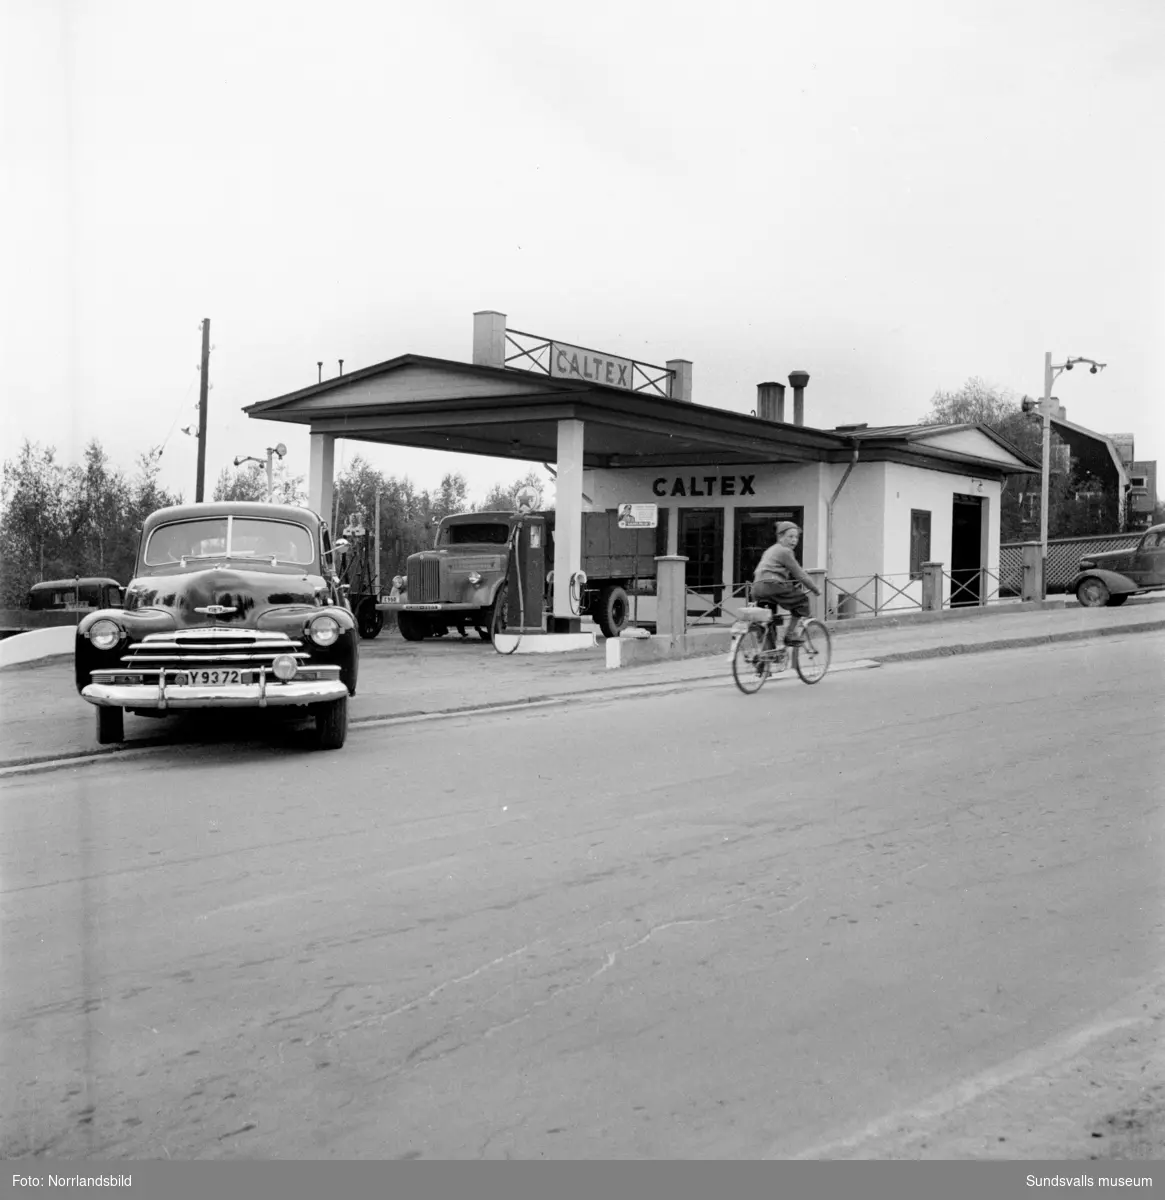 Caltex bensinstation i korsningen av Fridhemsgatan och Björneborgsgatan. Innehavaren hette Allan Sundbom.